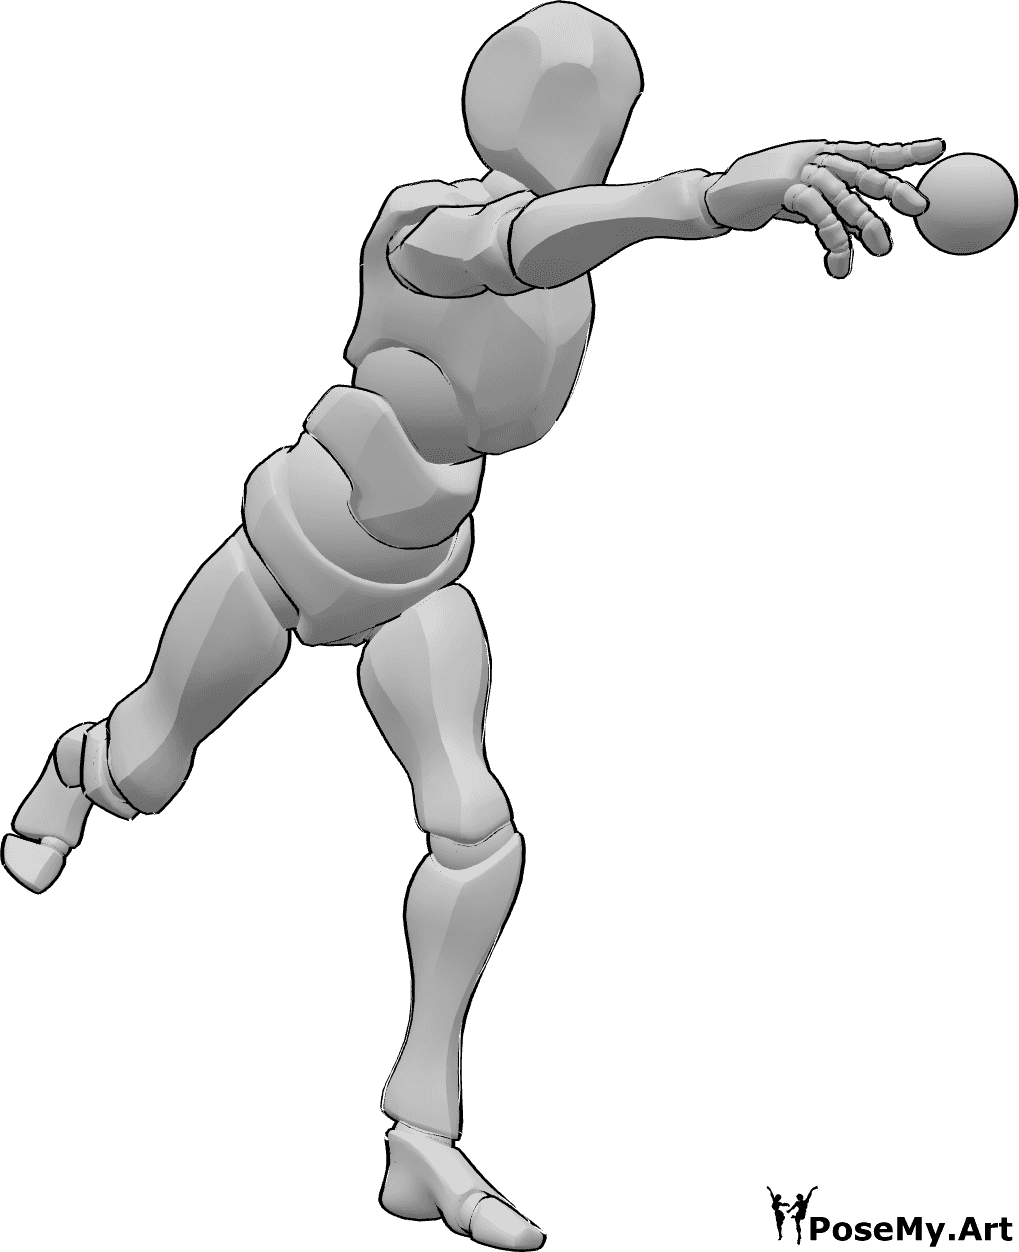 Posen-Referenz- Baseball-Wurfpose - Der Baseballspieler steht und wirft den Ball mit der rechten Hand